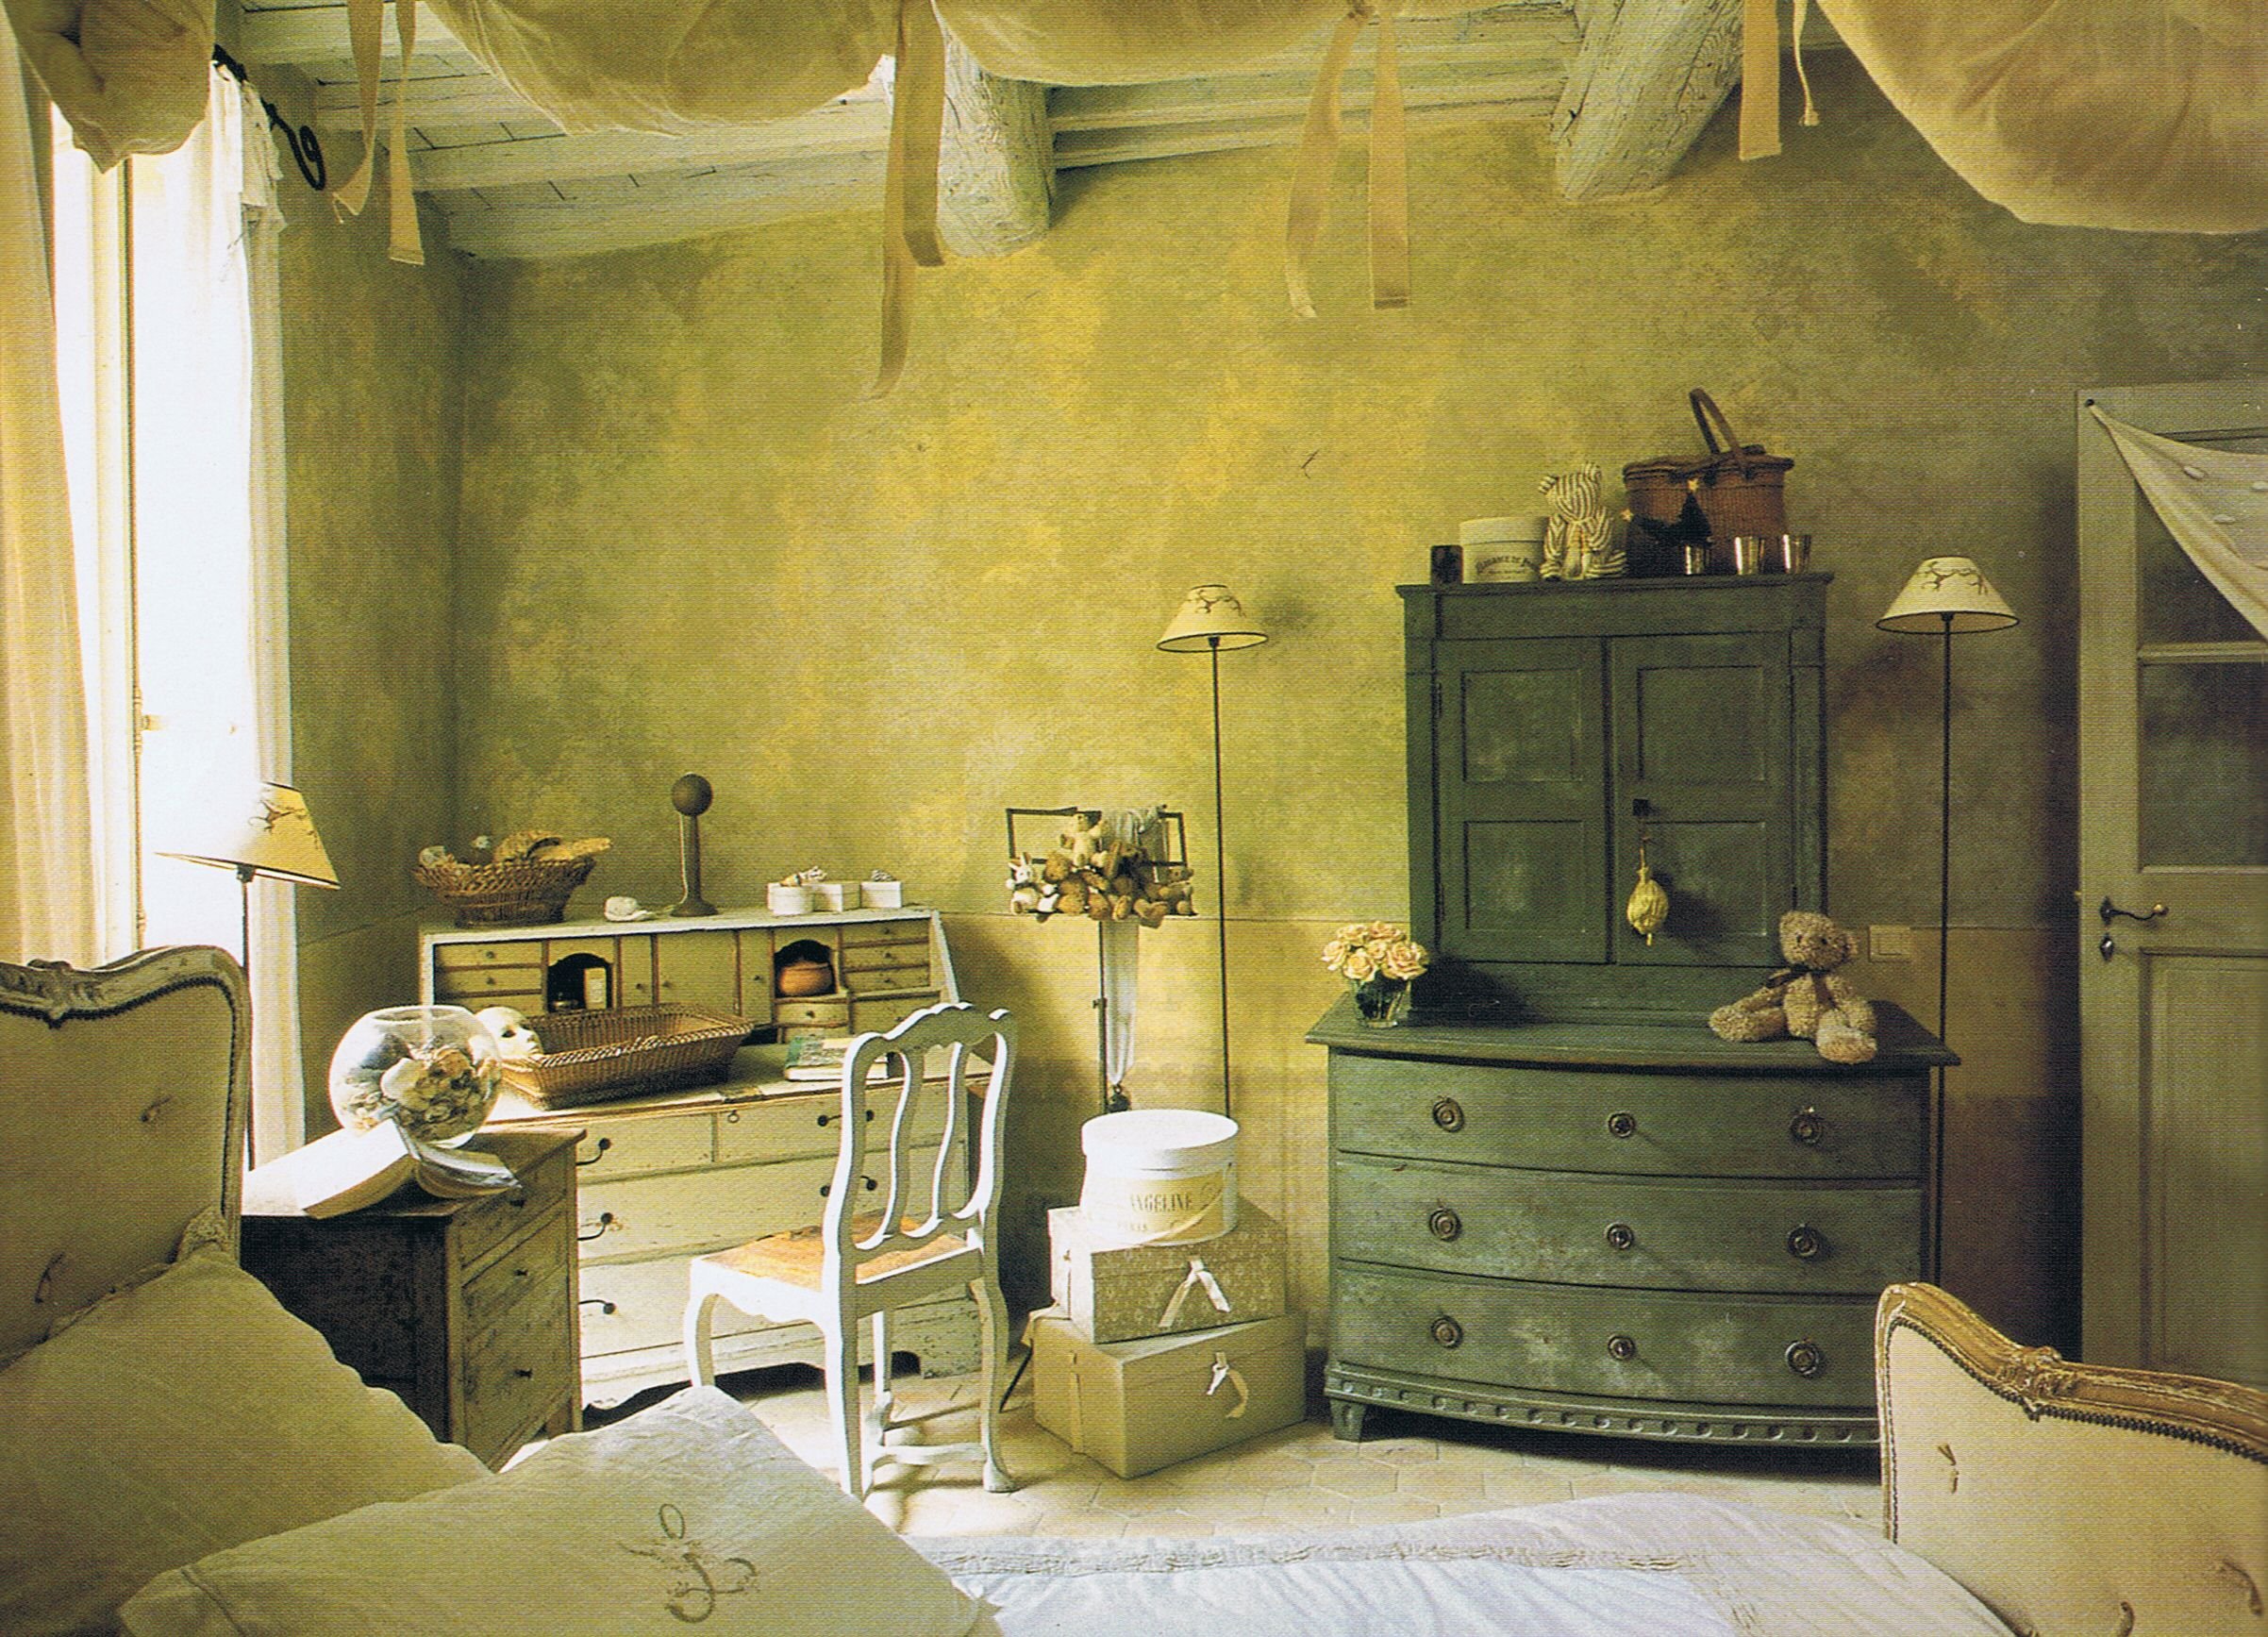 Фото старых интерьеров. Спальня в старинном стиле. Винтажный интерьер. Комната в старинном стиле. Комната в старинном стим Ле.